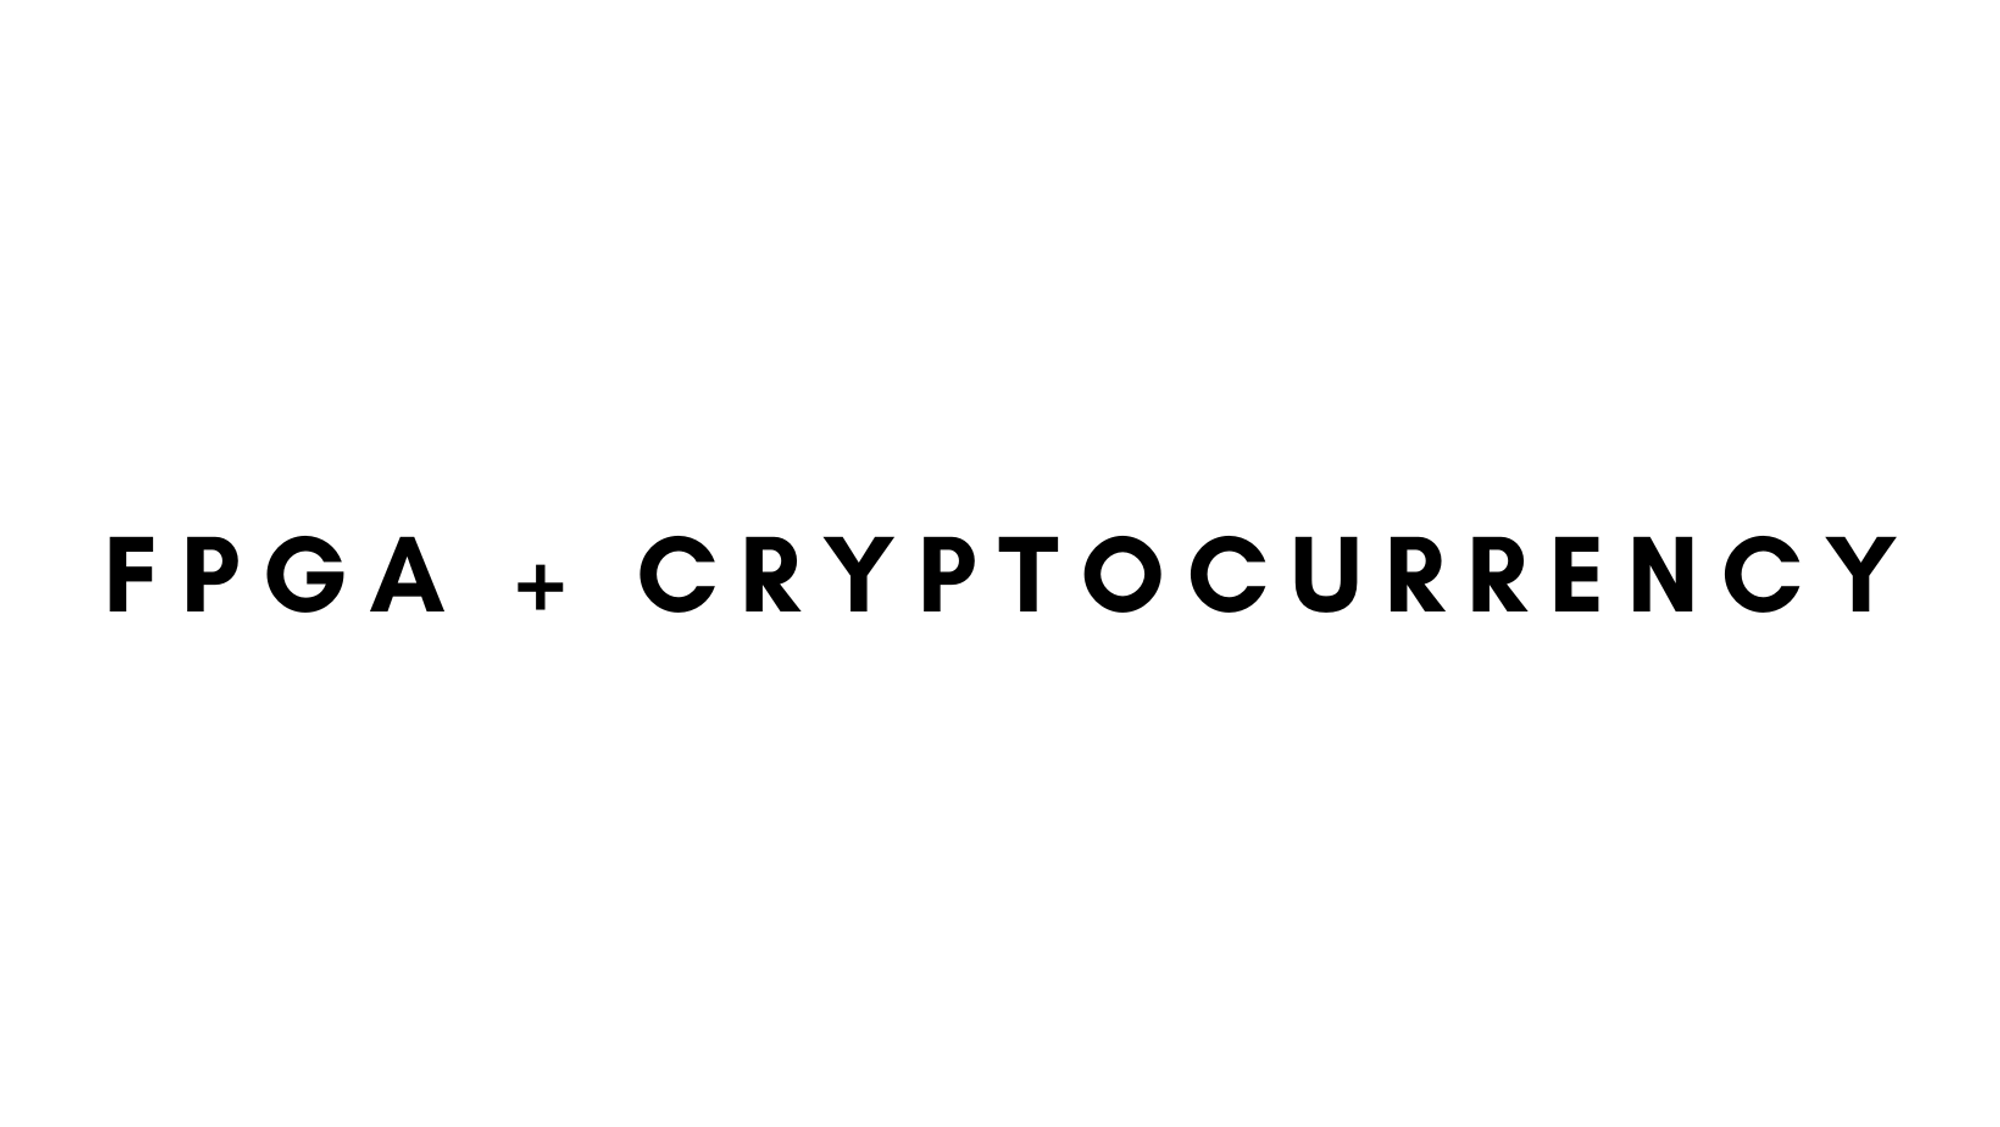 μPcoin: A Simplified Cryptocurrency Protocol